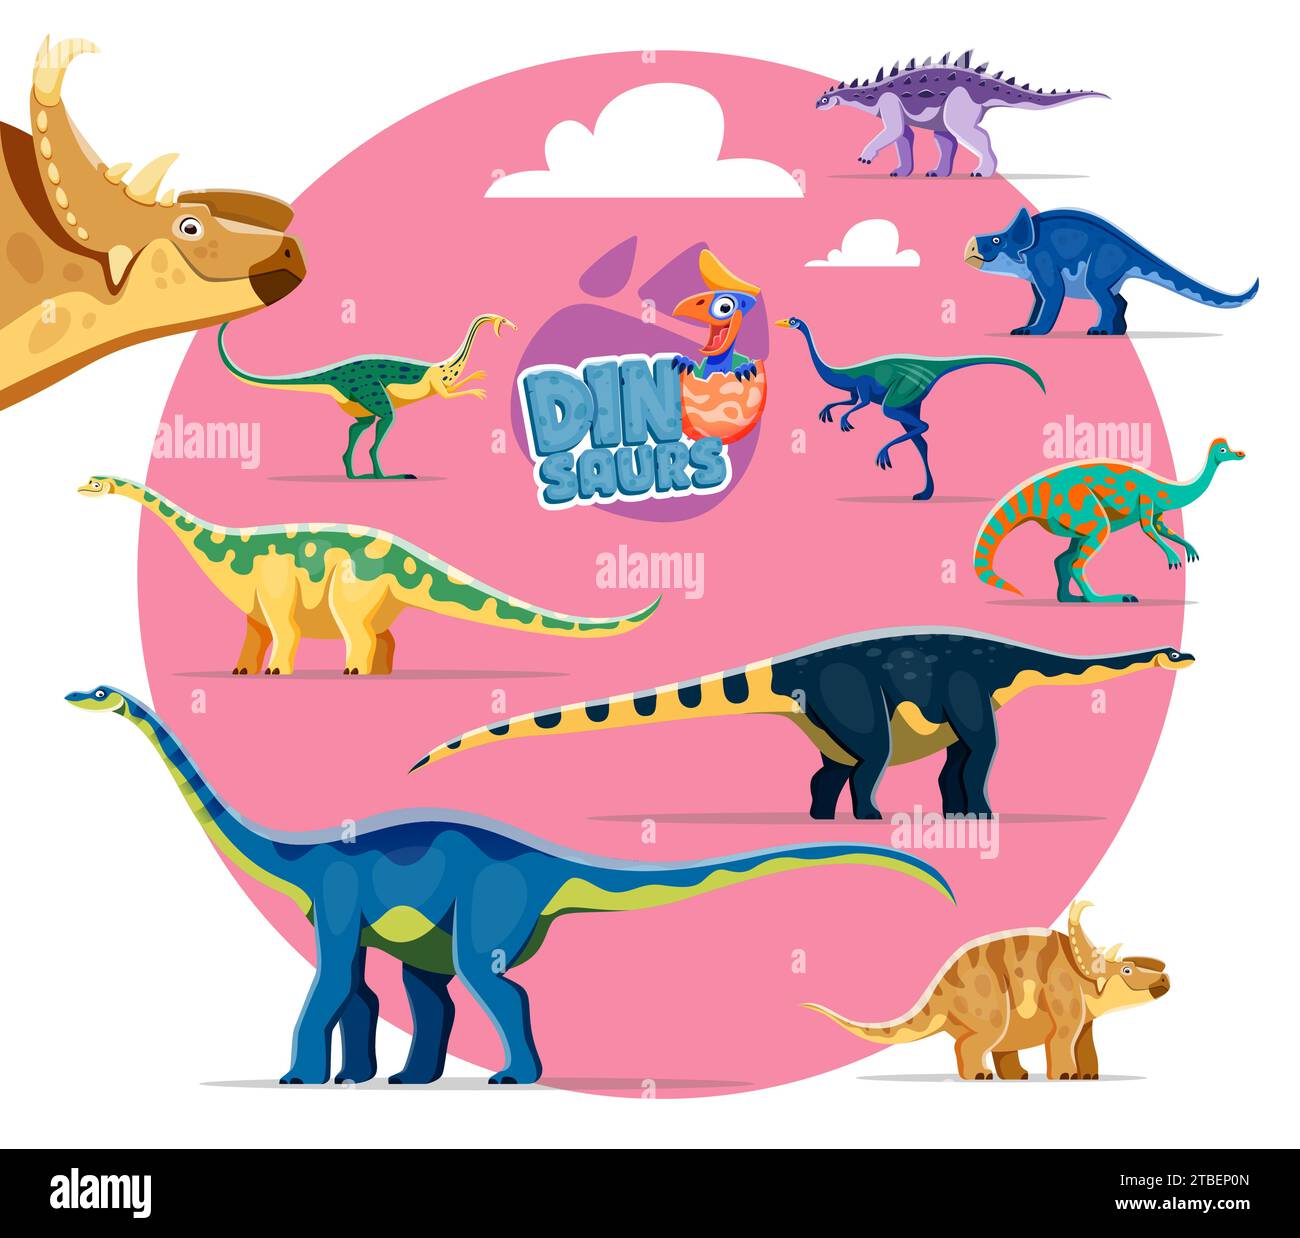 Lustige Dinosaurier-Cartoon-Persönlichkeiten. Struthiosaurus, Protoceratops, Elmisaurus und Garudimimus, Jaxartosaurus, Opisthocoelicaudia und Magyarosaurus, Quaesitosaurus, Pachyrhinosaurus Dinosaurier-Charaktere Stock Vektor